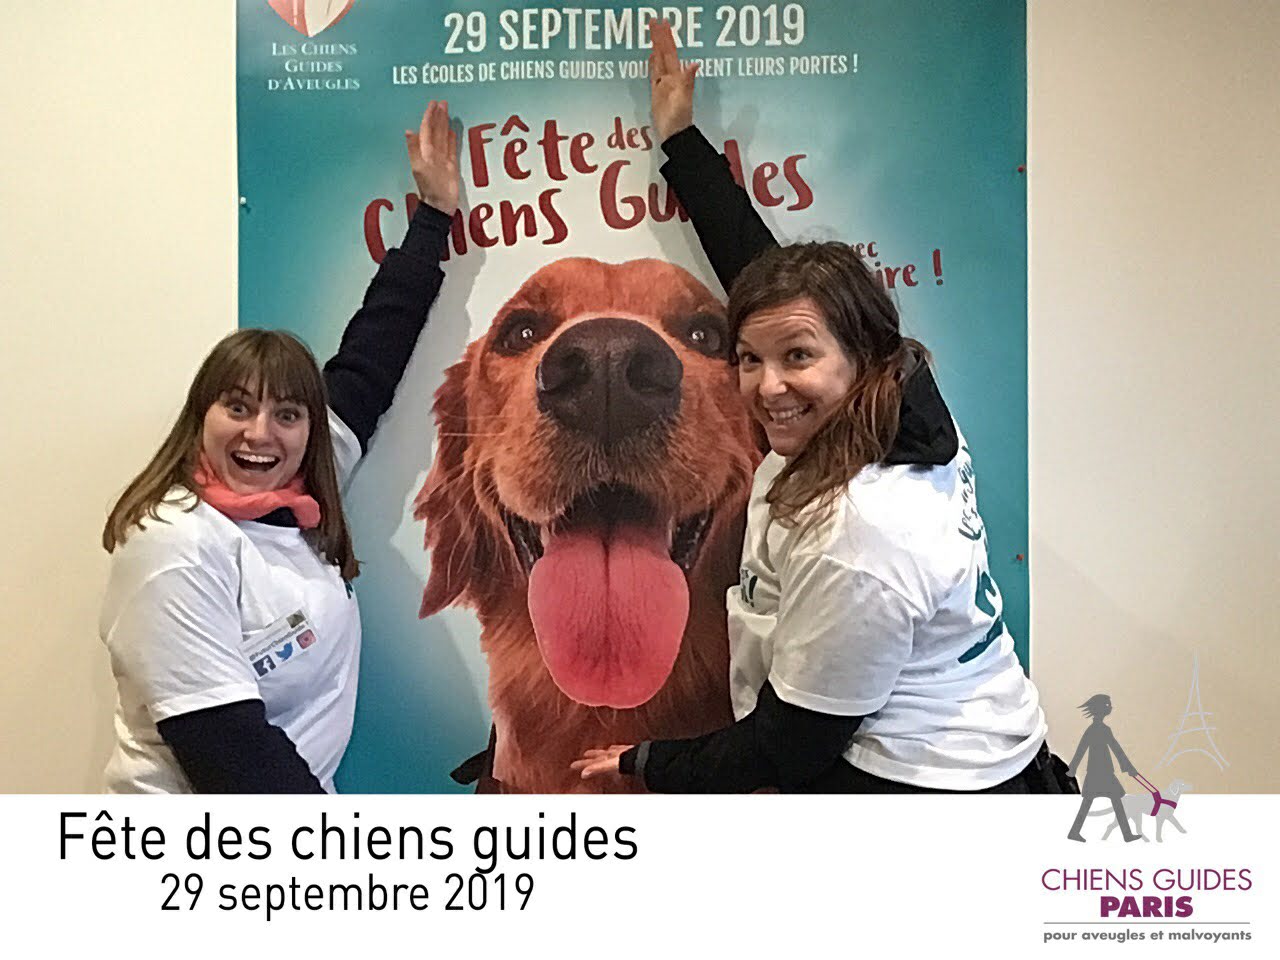 Marie et moi de part et d'autres de l'affiche avec un golden retriever tirant la langue de la fête des chiens guides le 29 septembre 2019 